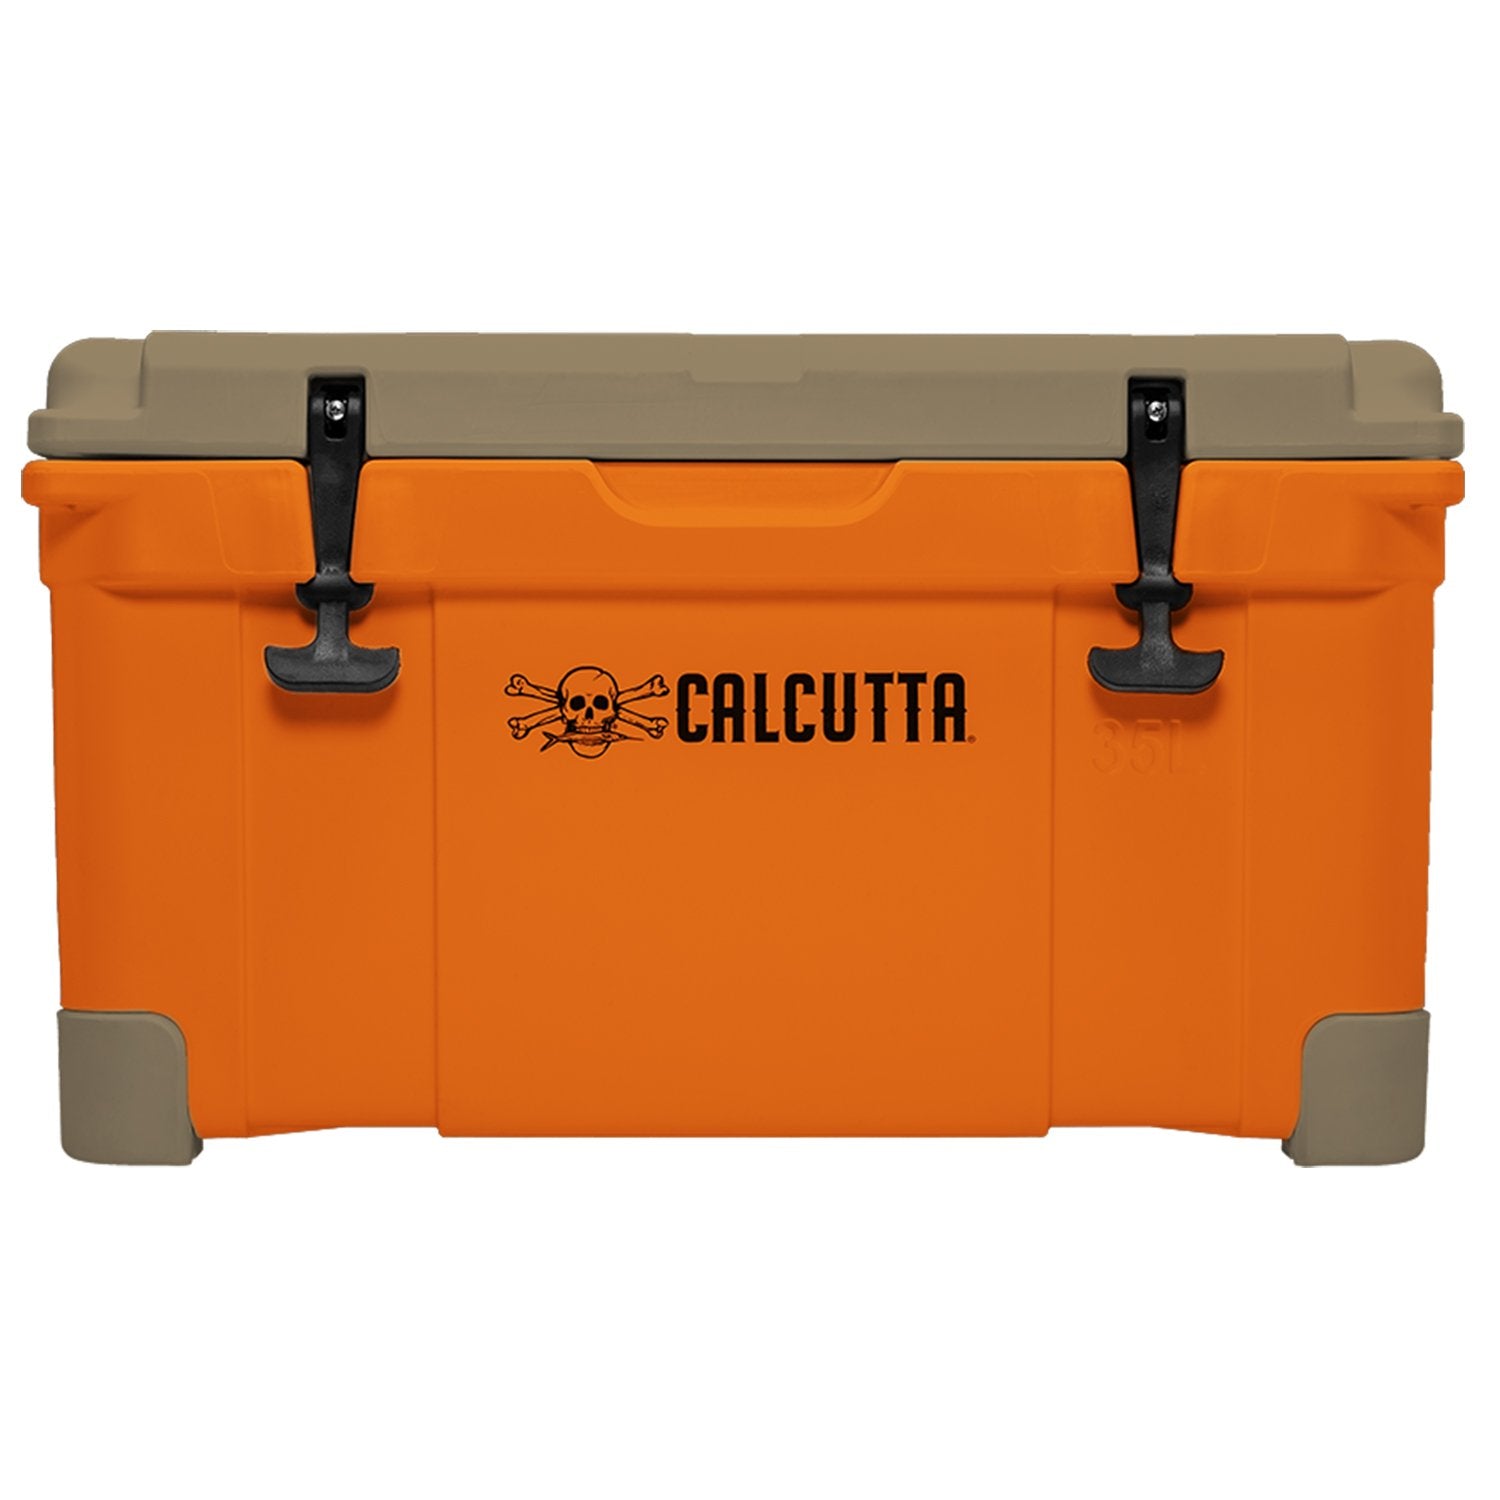 New Calcutta Gear for 2019: Hard Cooler, Aerator Kit, Fish B - Game & Fish